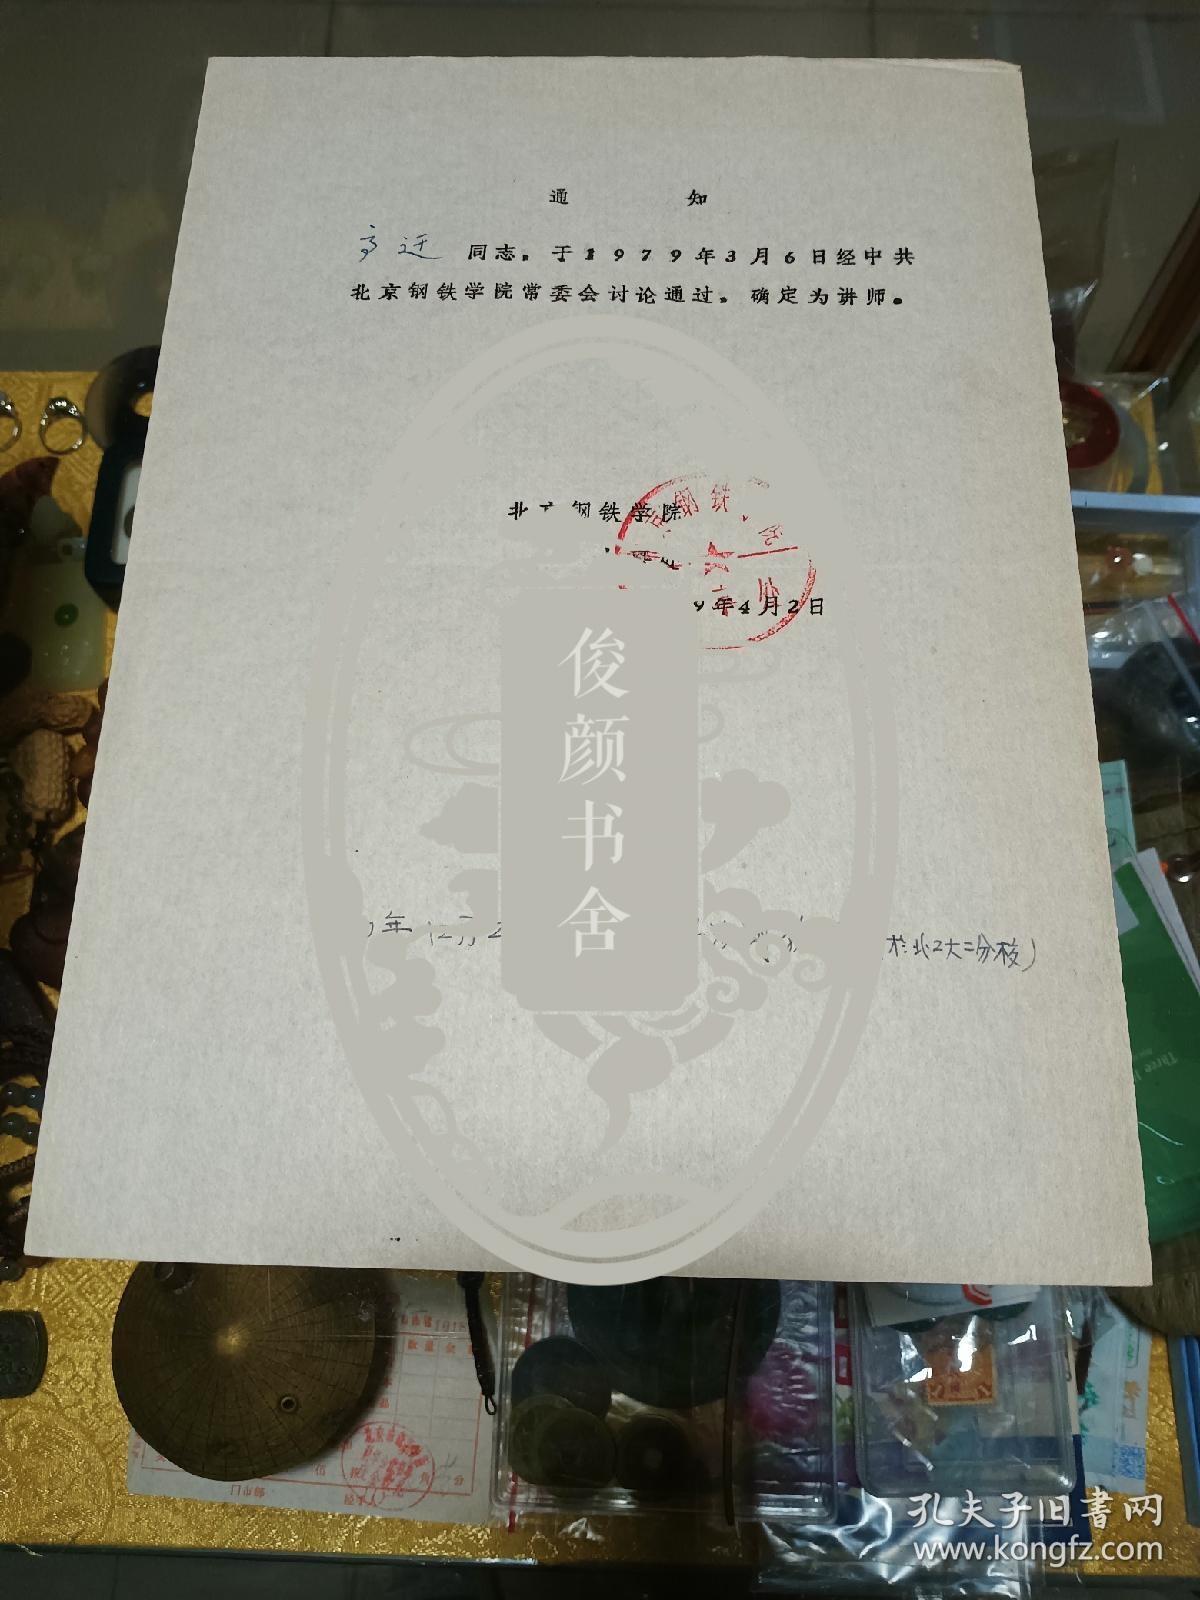 1979年北京钢铁学院通知书一份，品佳、油印、高迁数、钤北京钢铁学院人事处印、建国早期文献、值得留存！